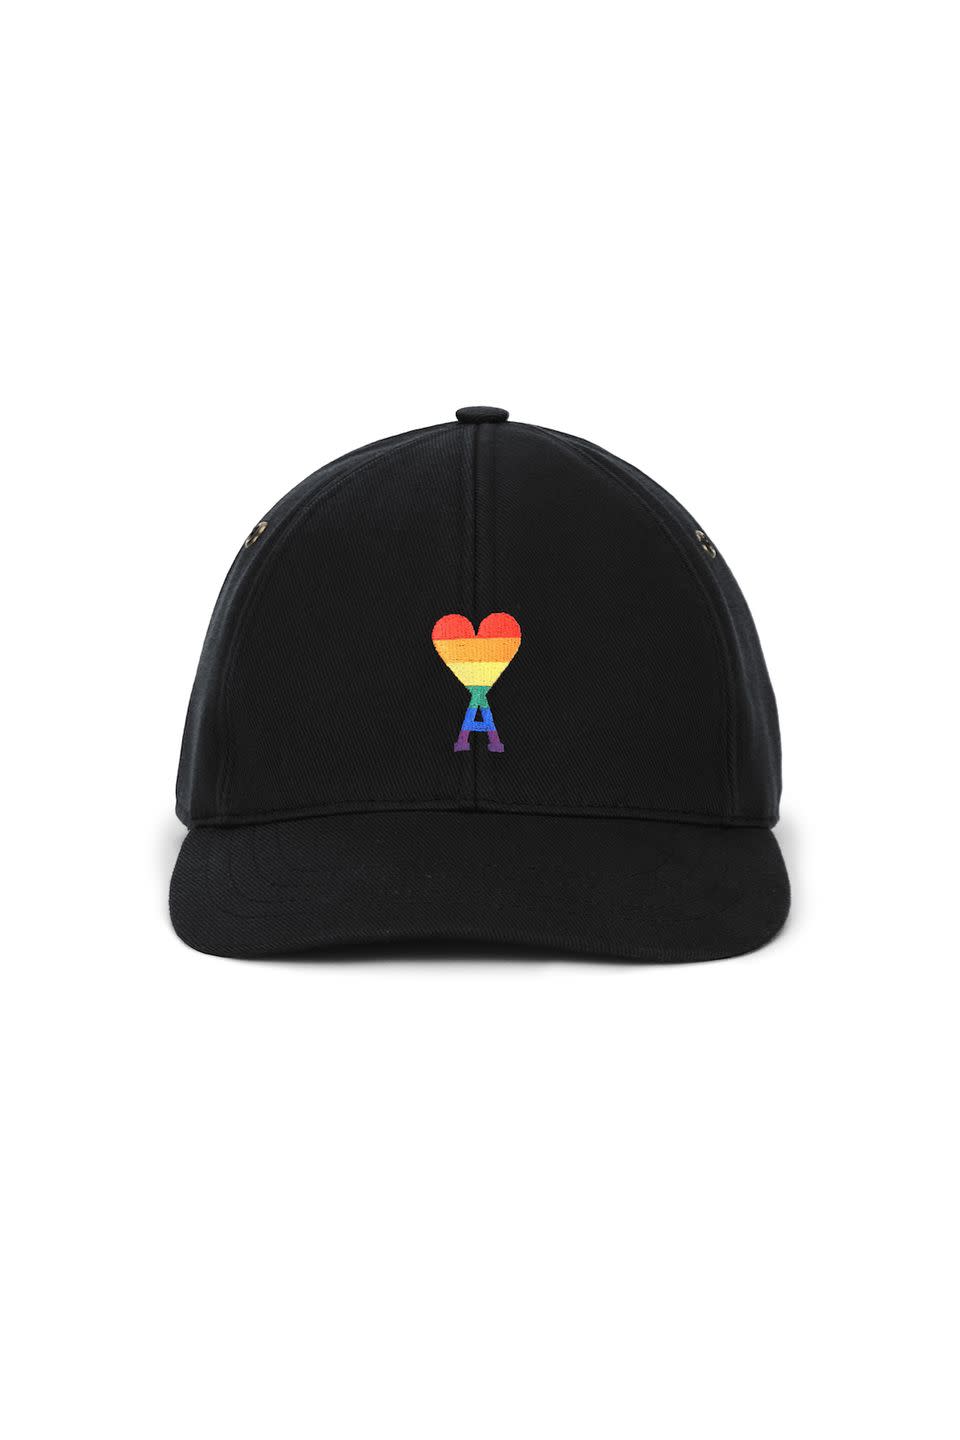 5) De Coeur Rainbow Cap